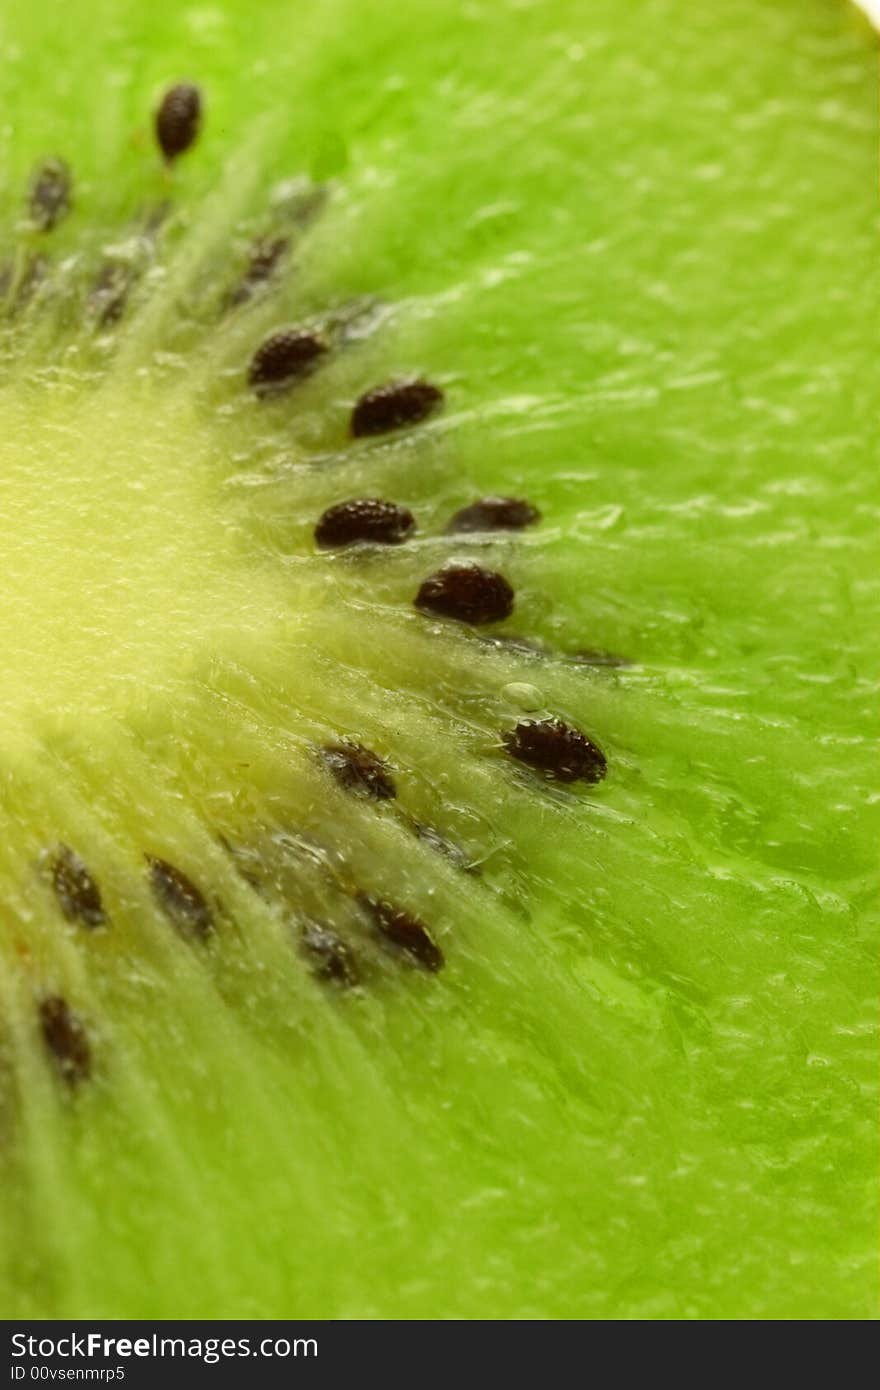 Amazing close-up of kiwi slice (3x)